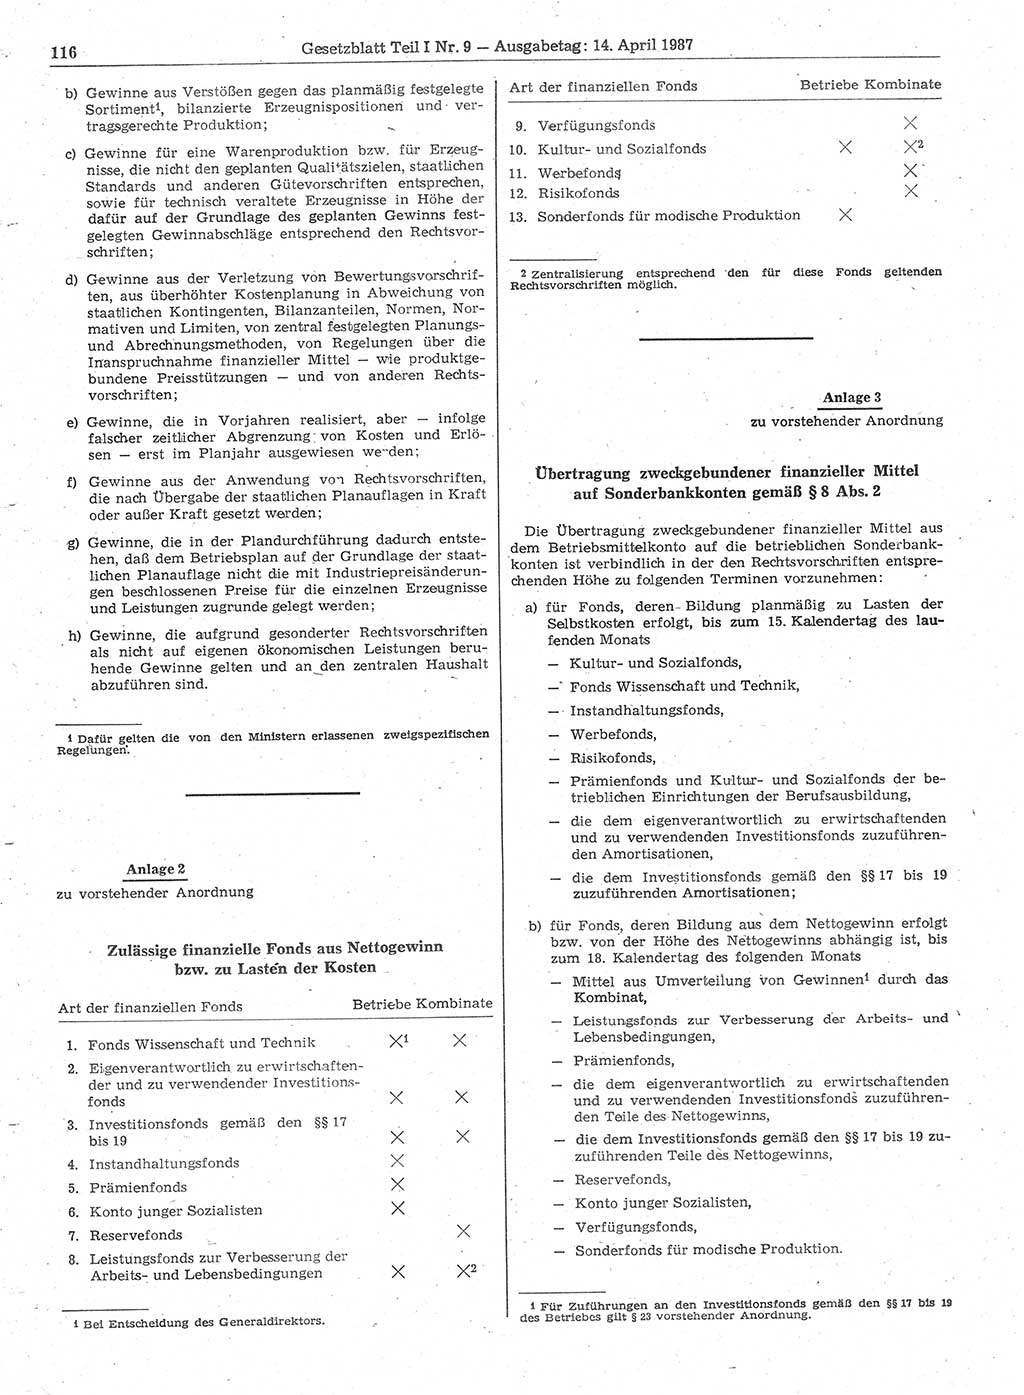 Gesetzblatt (GBl.) der Deutschen Demokratischen Republik (DDR) Teil Ⅰ 1987, Seite 116 (GBl. DDR Ⅰ 1987, S. 116)